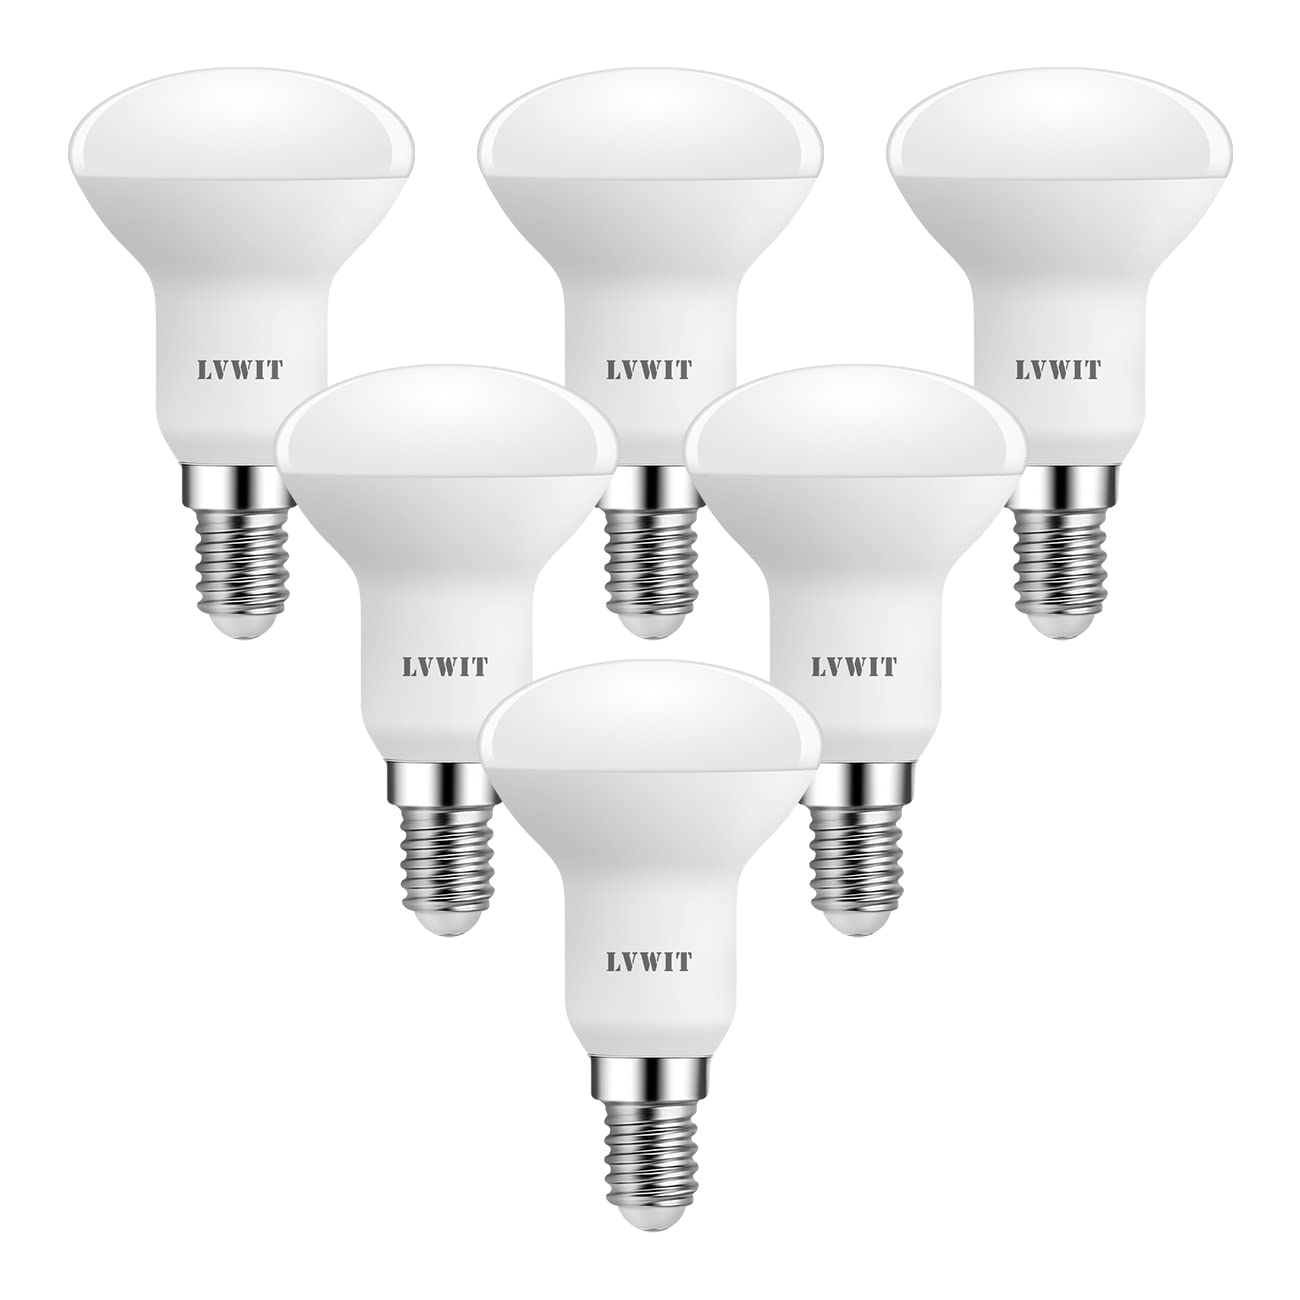 Tendance  LVWIT 5W Ampoule LED E14 R50, Equivalent à Ampoule Incandescente 50W, 470Lm 2700K Blanc Chaud, Non Dimmable, Lot de 6    [Classe énergétique F] E0vBV9CDW en solde